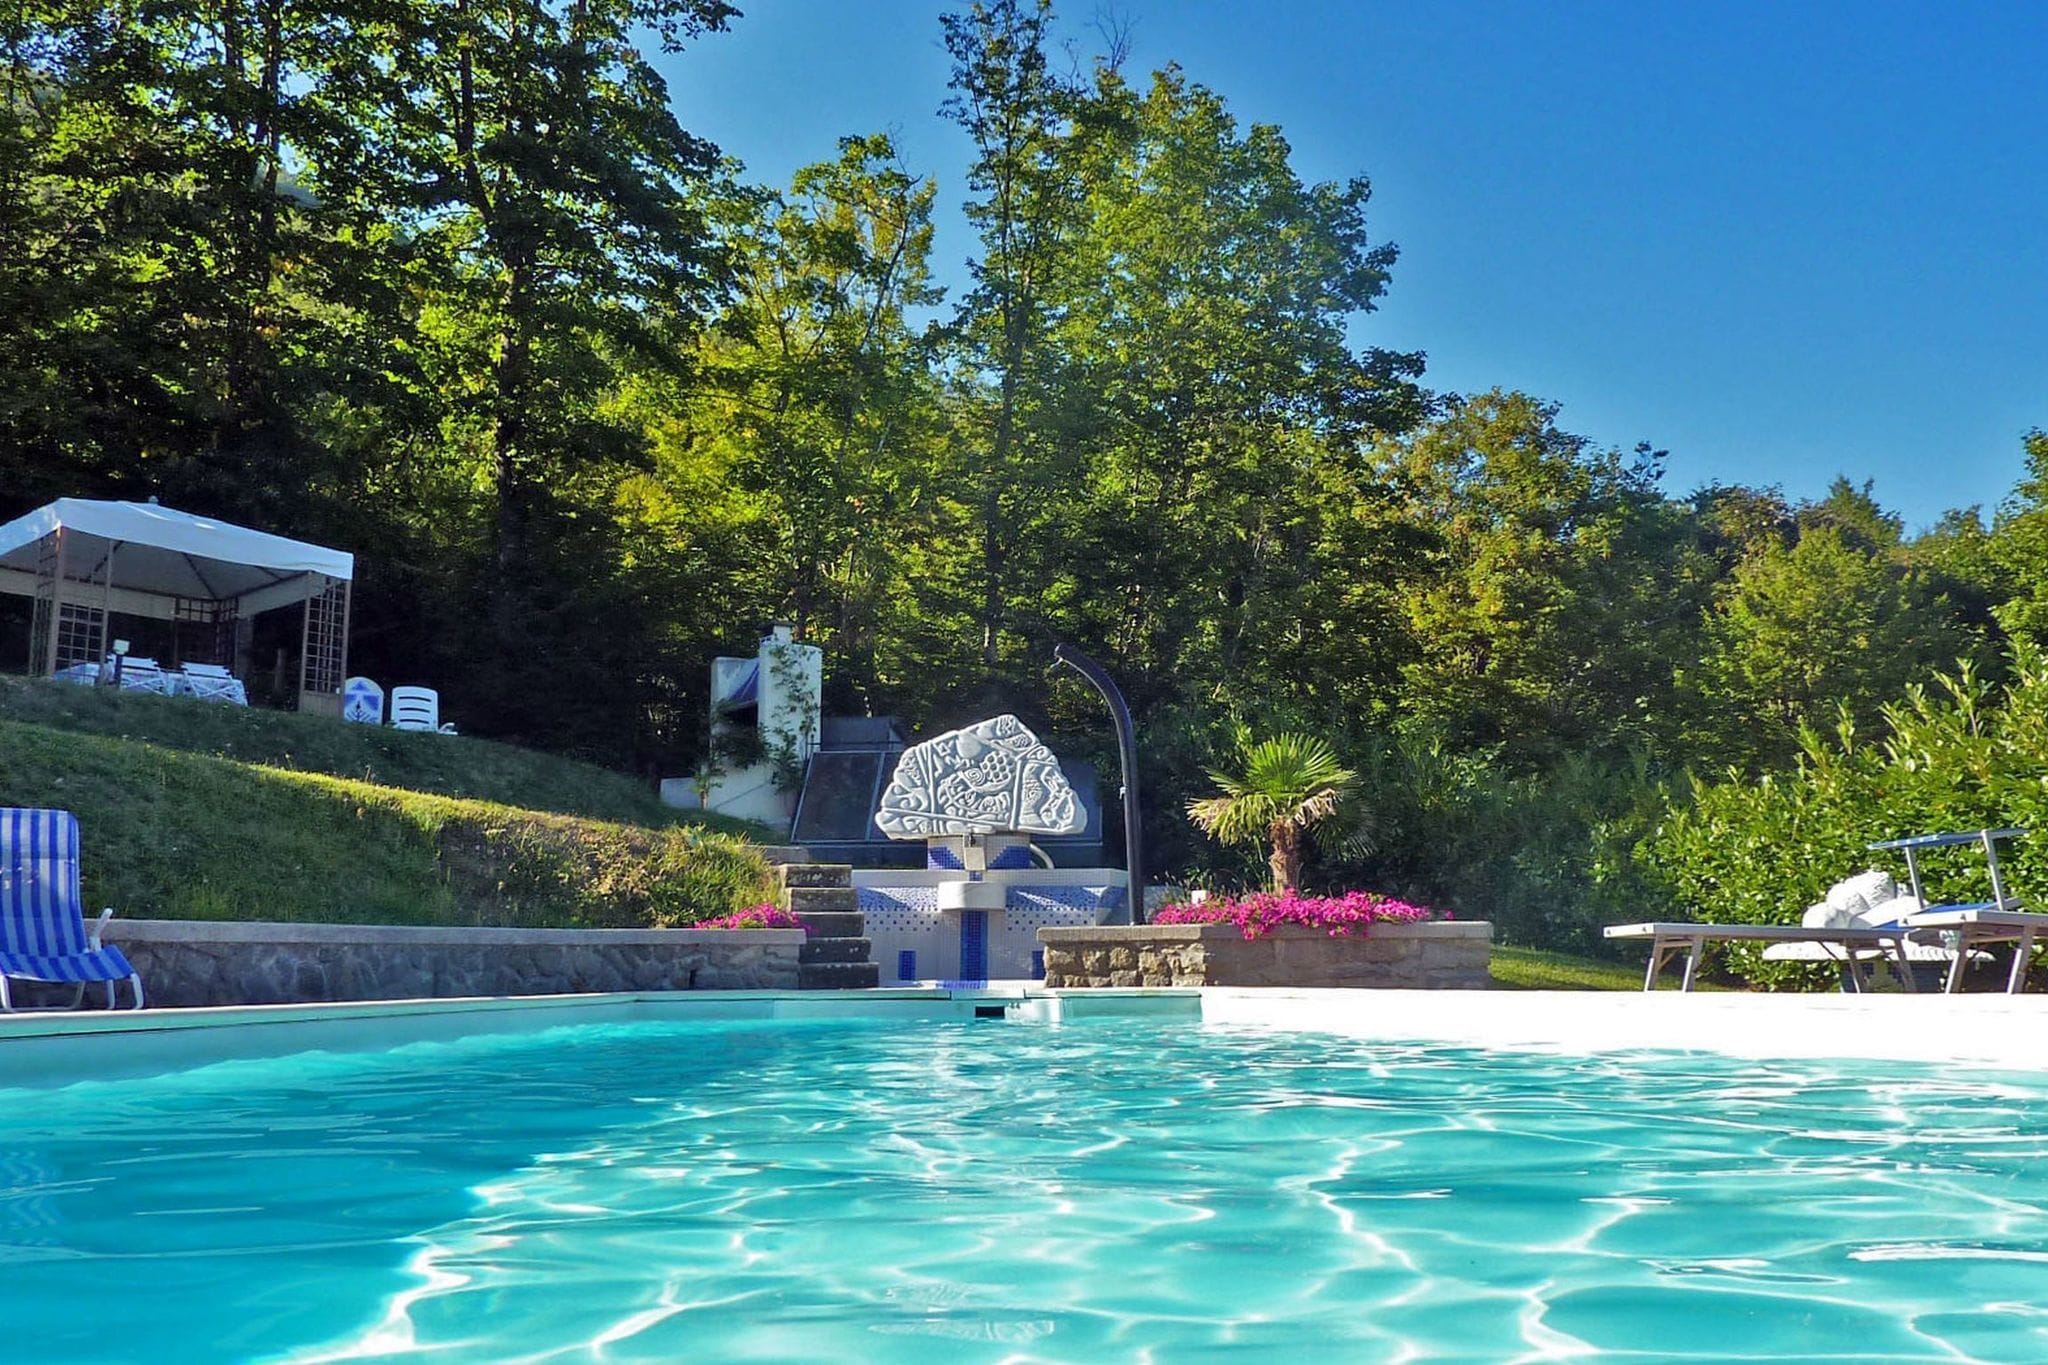 Exclusieve villa nabij Pistoia met een privézwembad